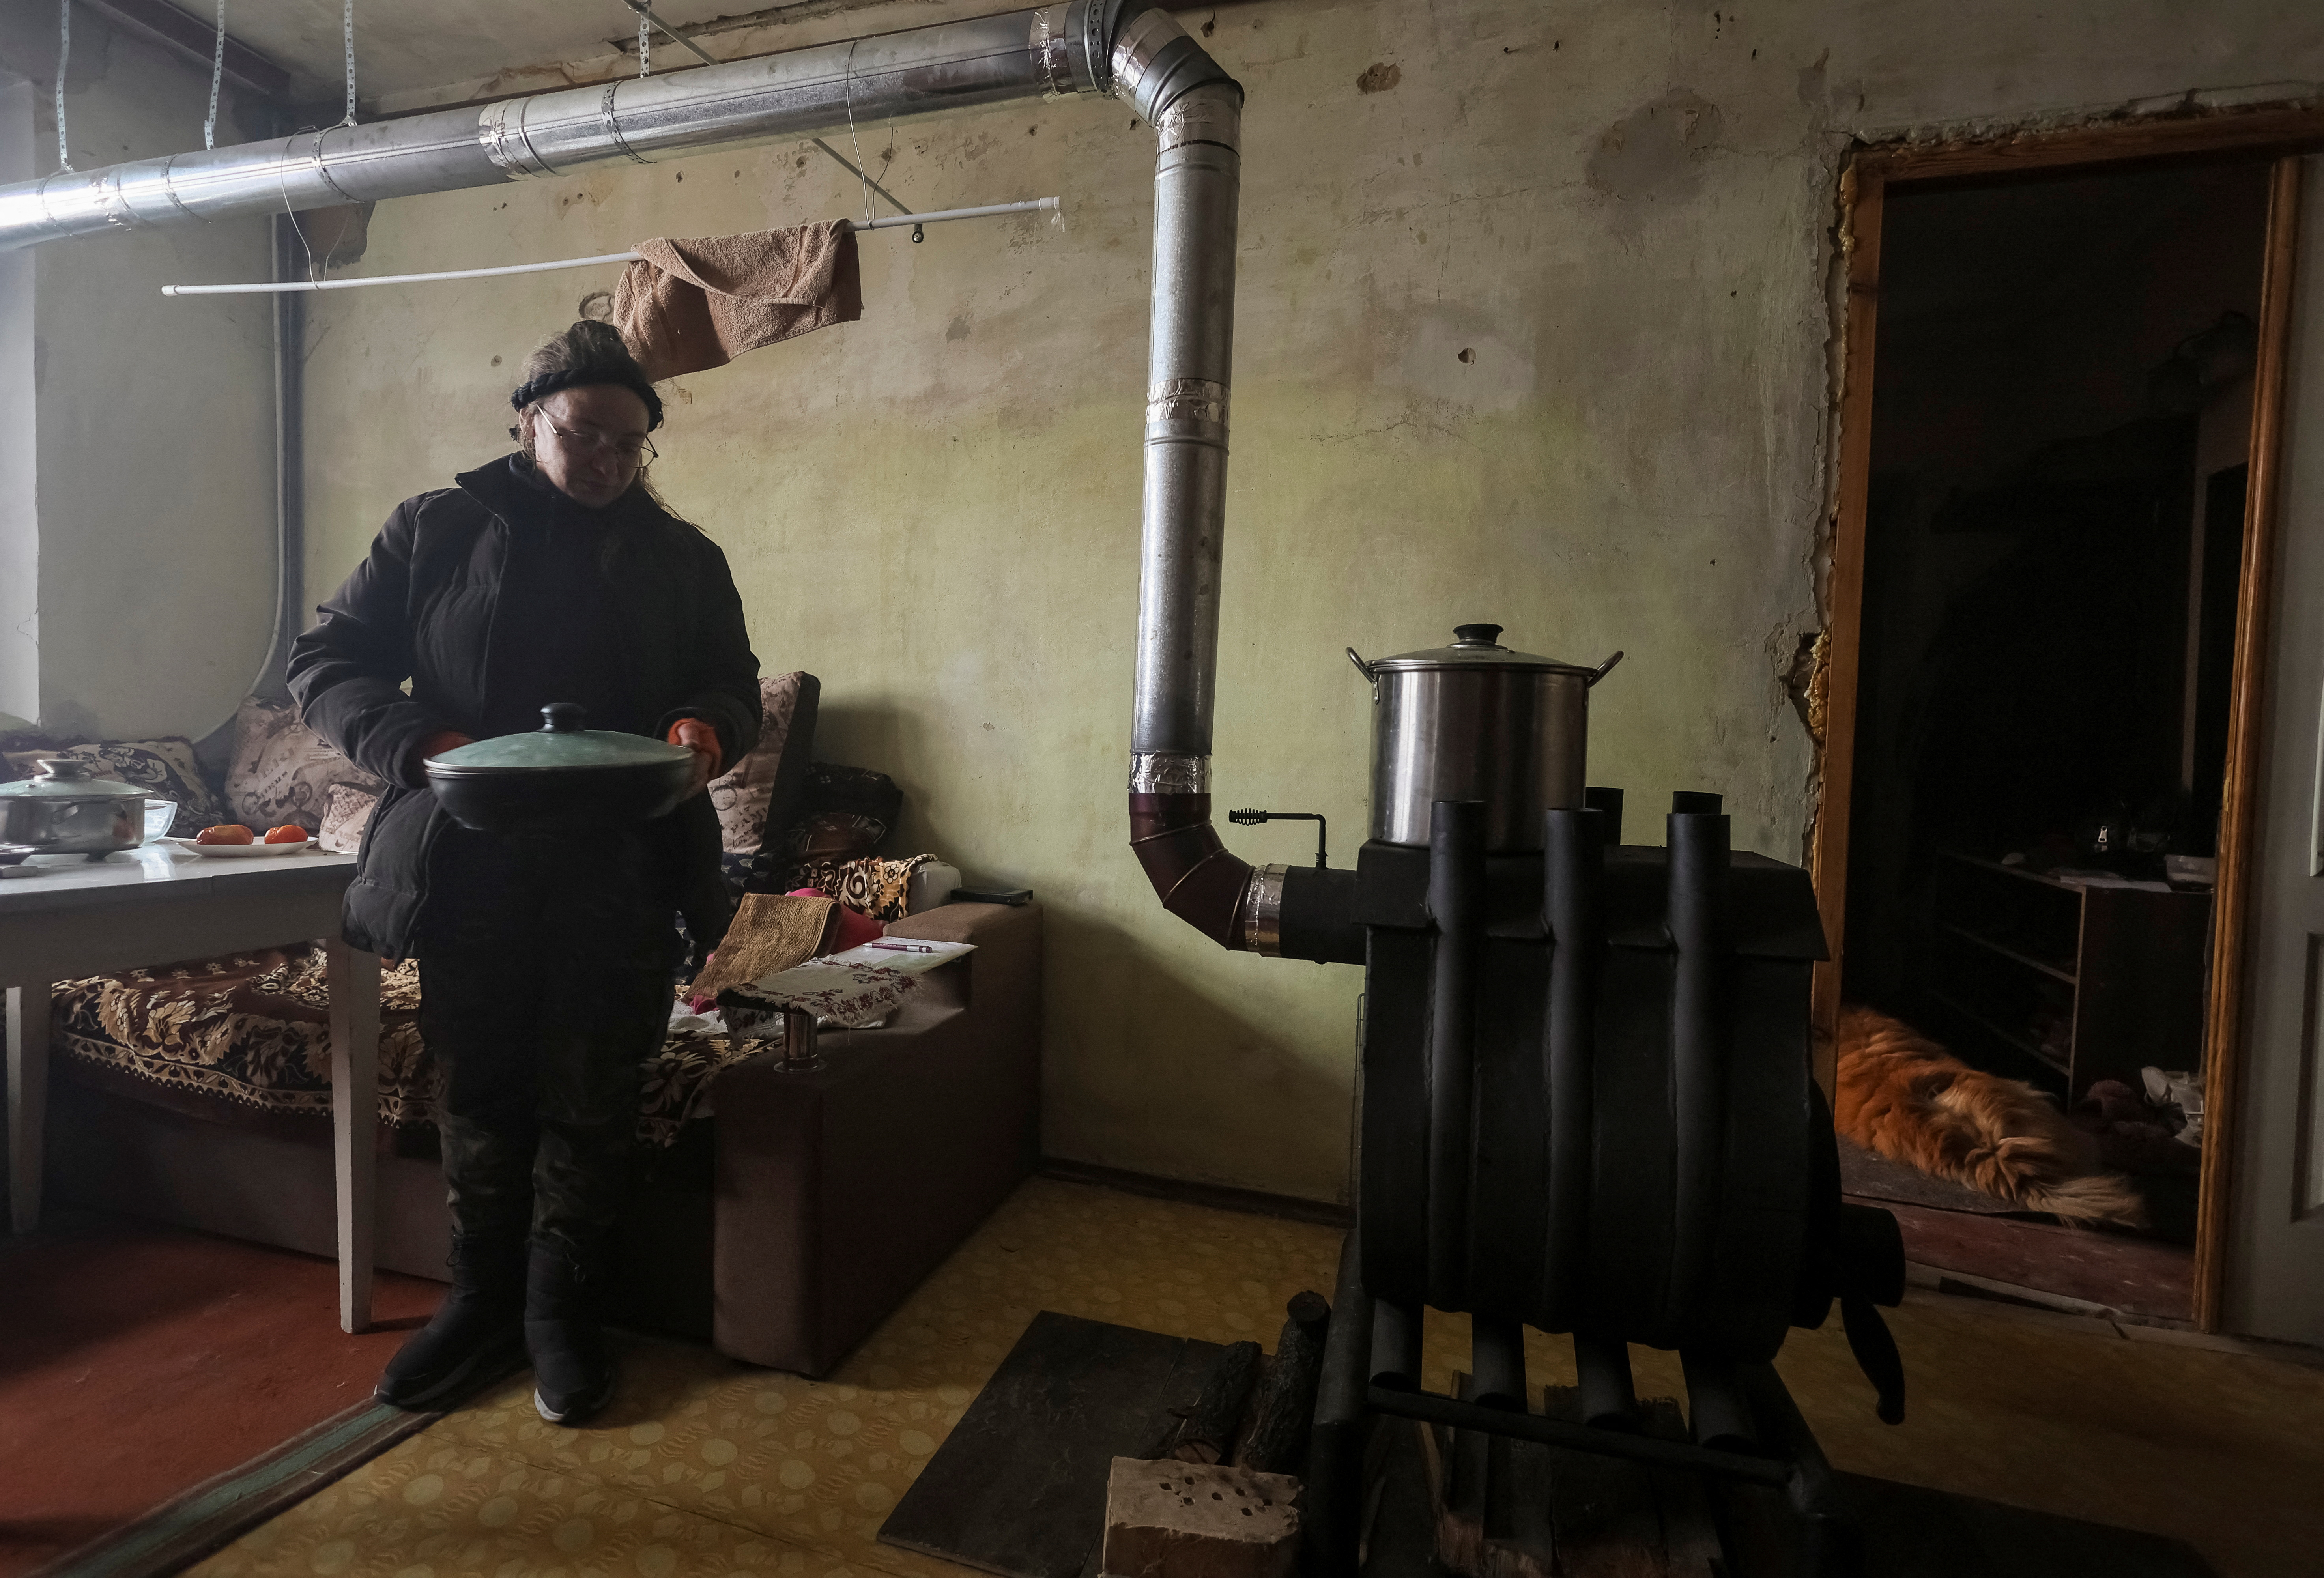 La residente local Tetiana Reznychenko, de 43 años, prepara comida en una estufa de leña instalada en su apartamento, que no tiene electricidad, calefacción ni agua, en el quinto piso de un edificio de apartamentos destruido por un ataque militar ruso en la aldea ucraniana de Horenka, que fue gravemente dañada por los combates en los primeros días de la invasión rusa, 19 de noviembre de 2022. REUTERS/Gleb Garanich
